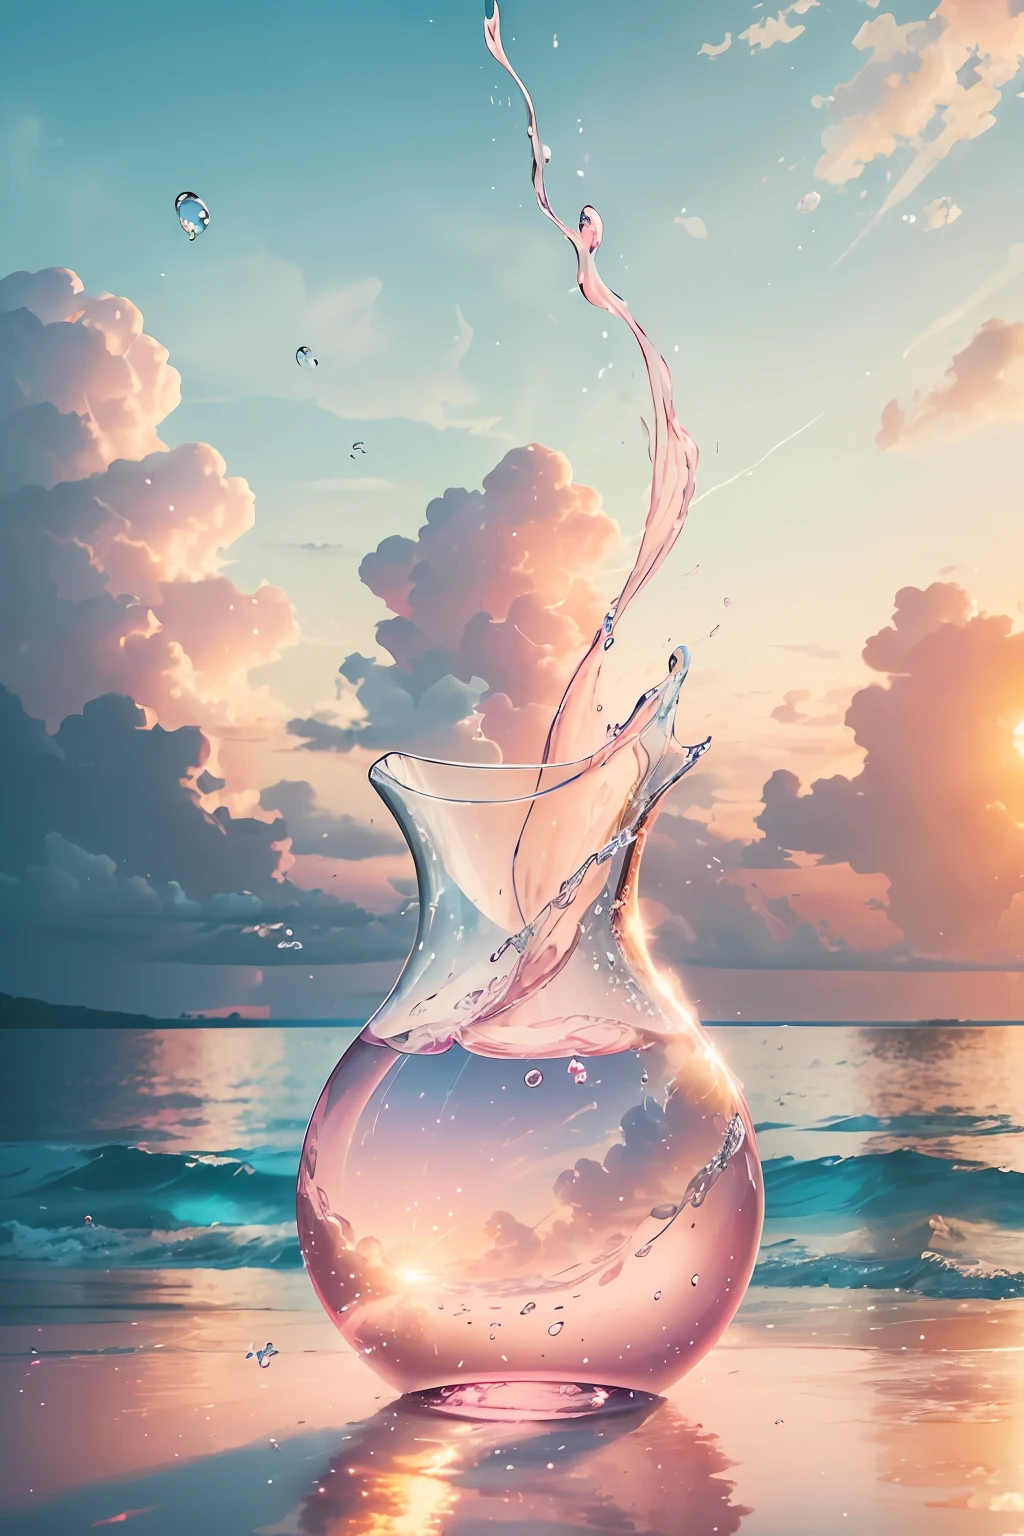 4K 9を作成する:熱帯のビーチの素晴らしい日の出を描いた16枚の写真, 穏やかな波と海岸沿いのヤシの木々. カラーパレットは鮮やかで、再生とポジティブなエネルギーを感じさせるものでなければなりません。.  柔らかいピンクの雲が入った透明なガラスの花瓶を想像してください. 雲は小さな泡でできている, それぞれ光の輝きを反射する. 泡が絶えず動いているのがわかります, 花瓶の中で動き、渦巻く. しかし、そのはかない性質にもかかわらず, 花瓶自体に永続的な印象を残す. 光がピンクの雲を透過するにつれ, ガラスに優しい輝きを放ちます, 本質を変える. 泡のように, 喜びの瞬間はつかの間で一時的なものかもしれない, しかし、あなたの魂に残る印象は、柔らかいピンクの雲のようです, あなたの存在を照らし、あなたを永遠に変える.